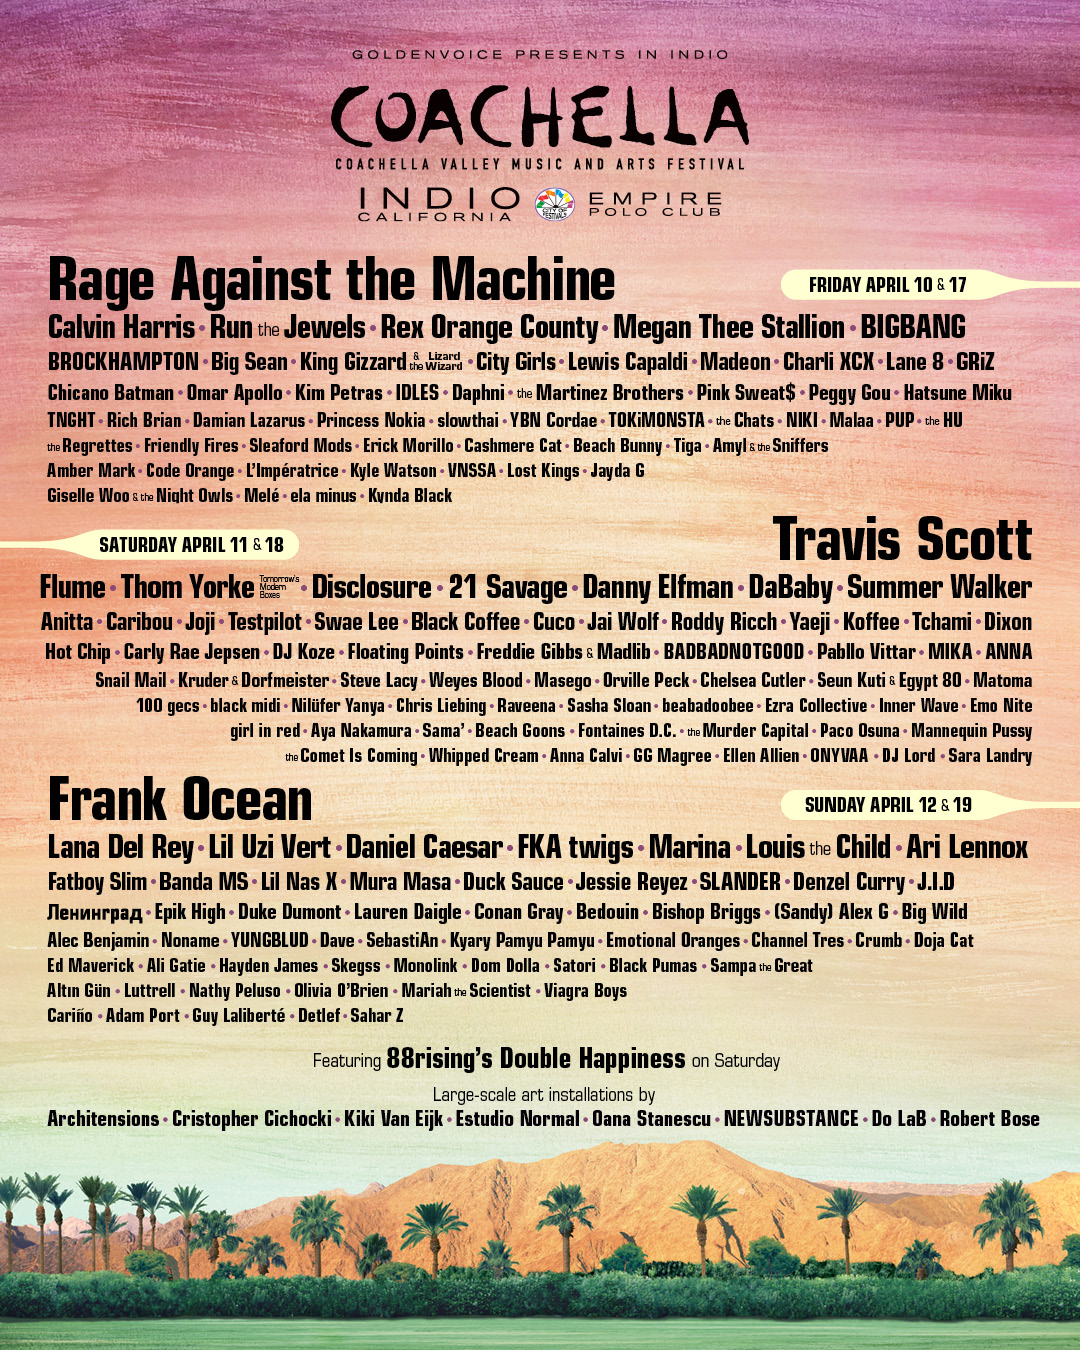 Coachella 2020 lineup. Photo by: Coachella / Twitter